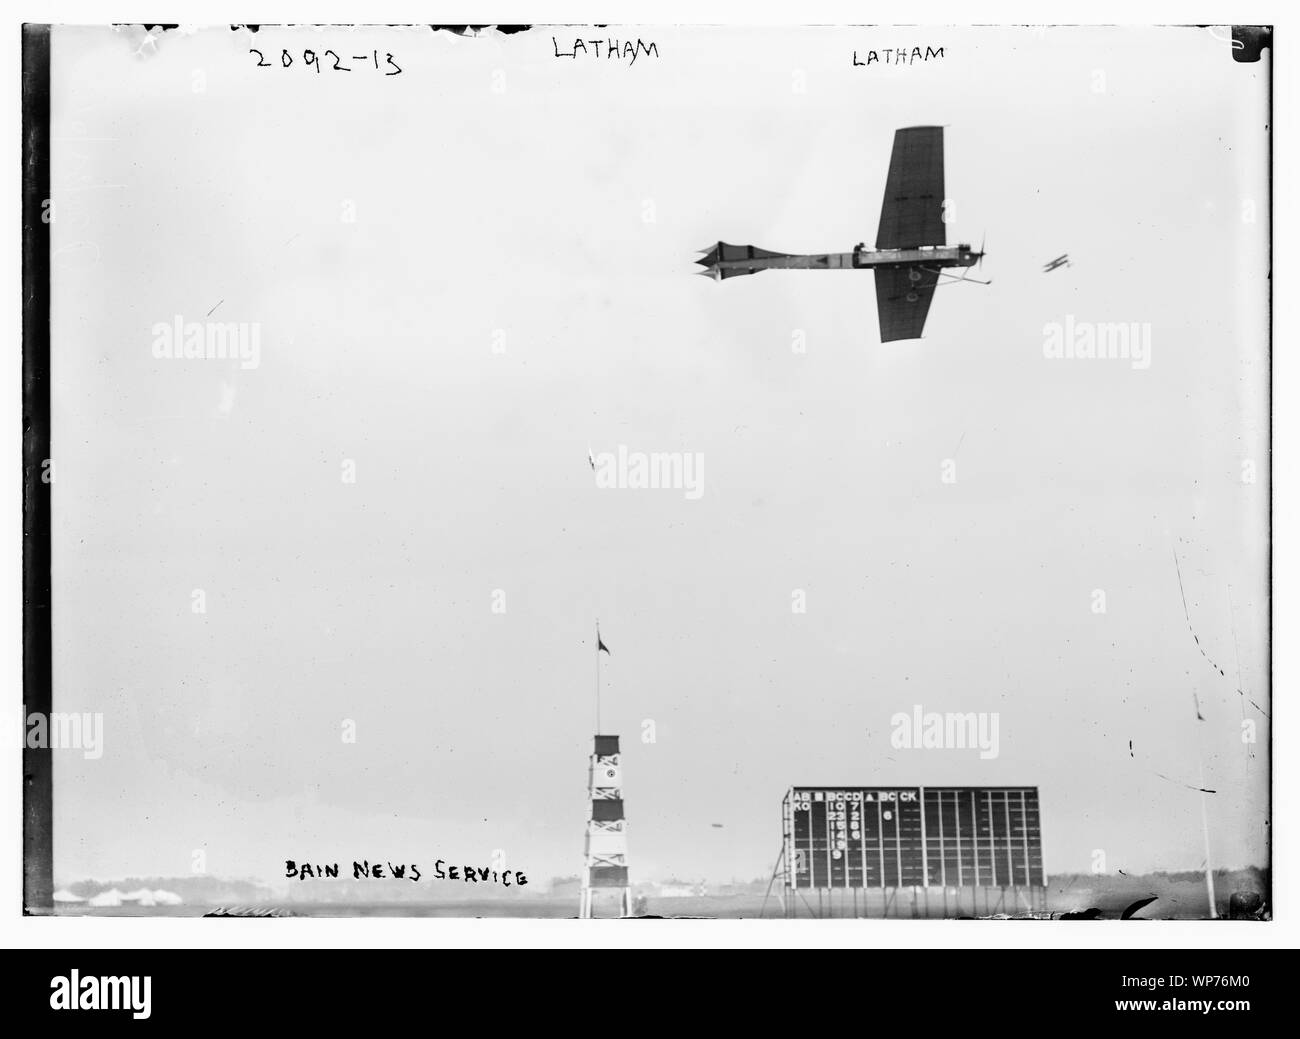 Latham. Plane flying. Stock Photo